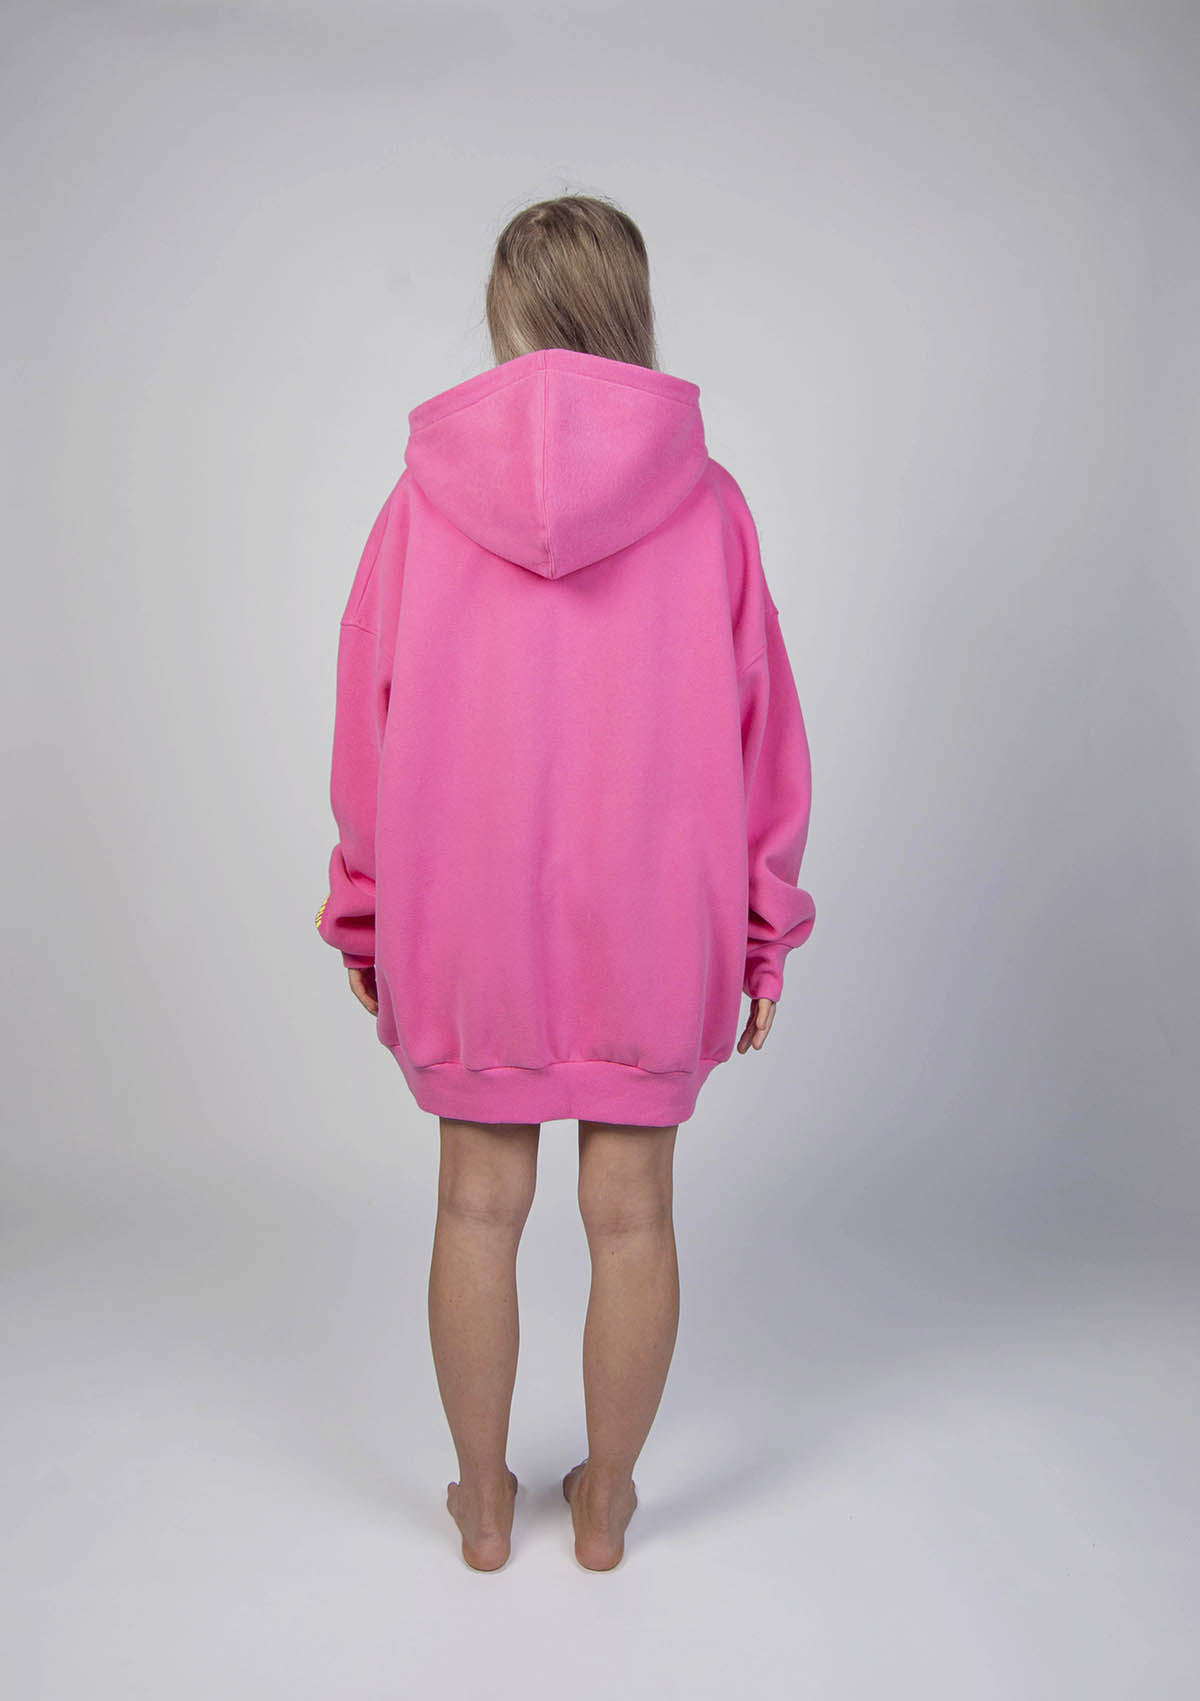 IMGP8794-mod-pink-hoodie